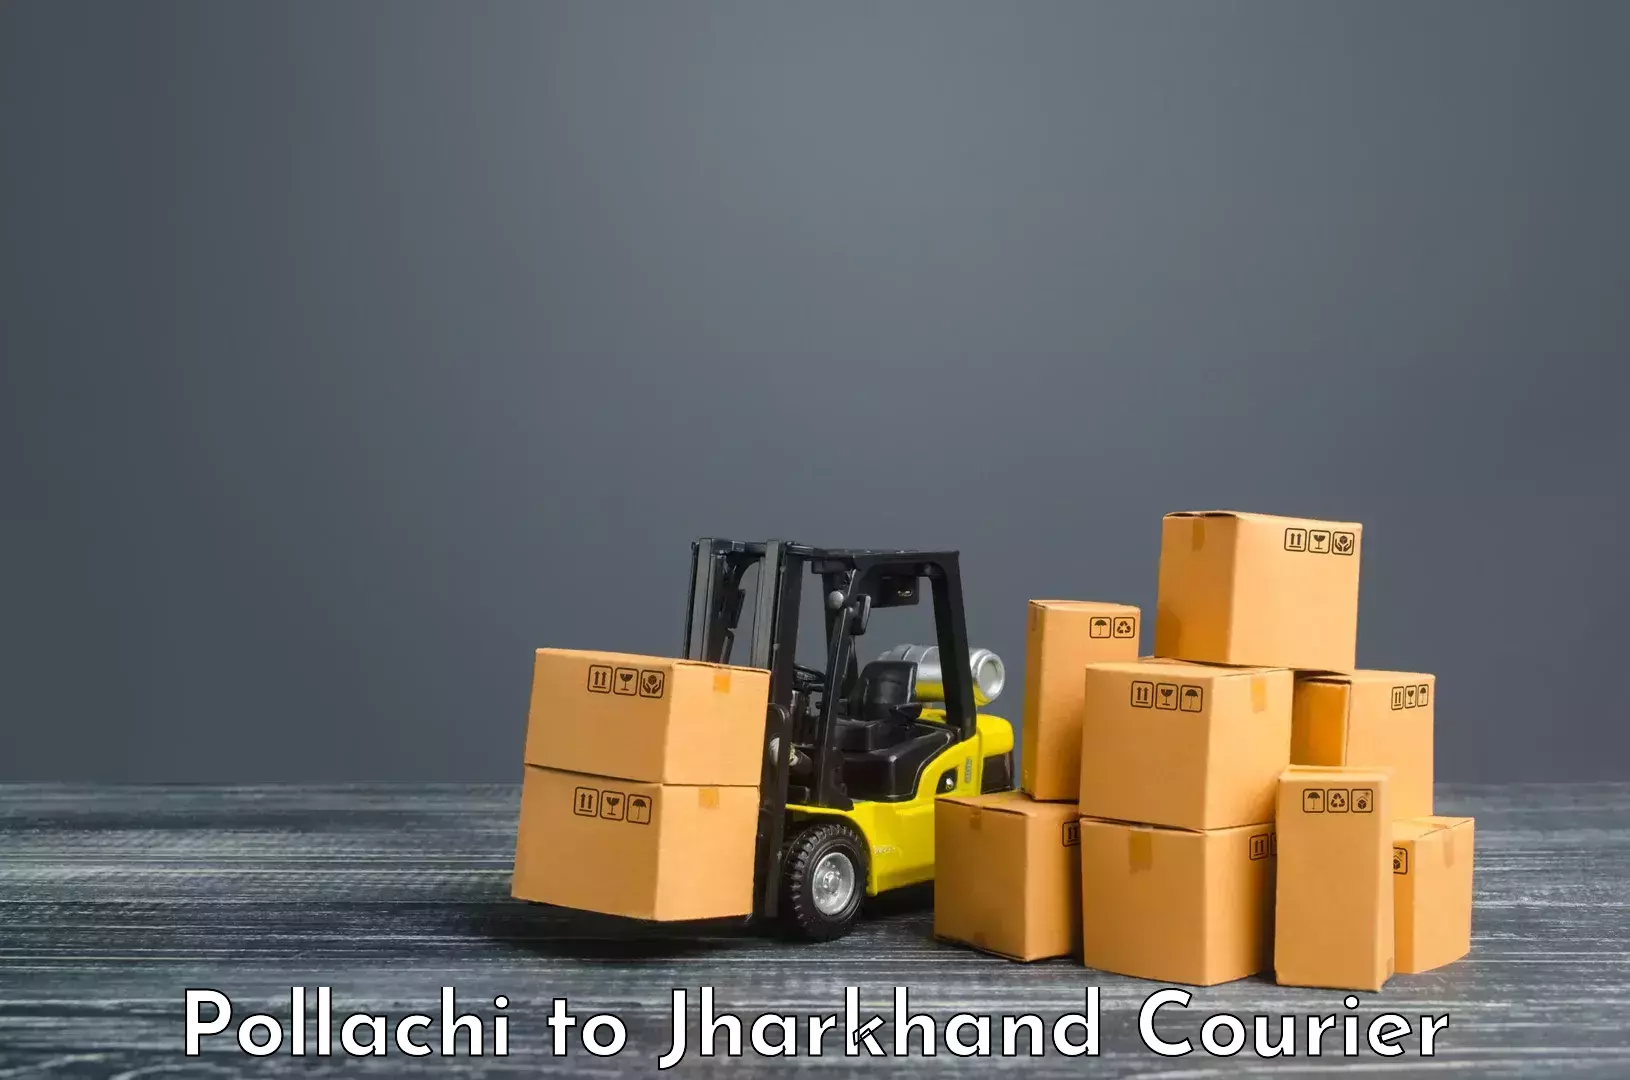 Advanced shipping services Pollachi to Doranda